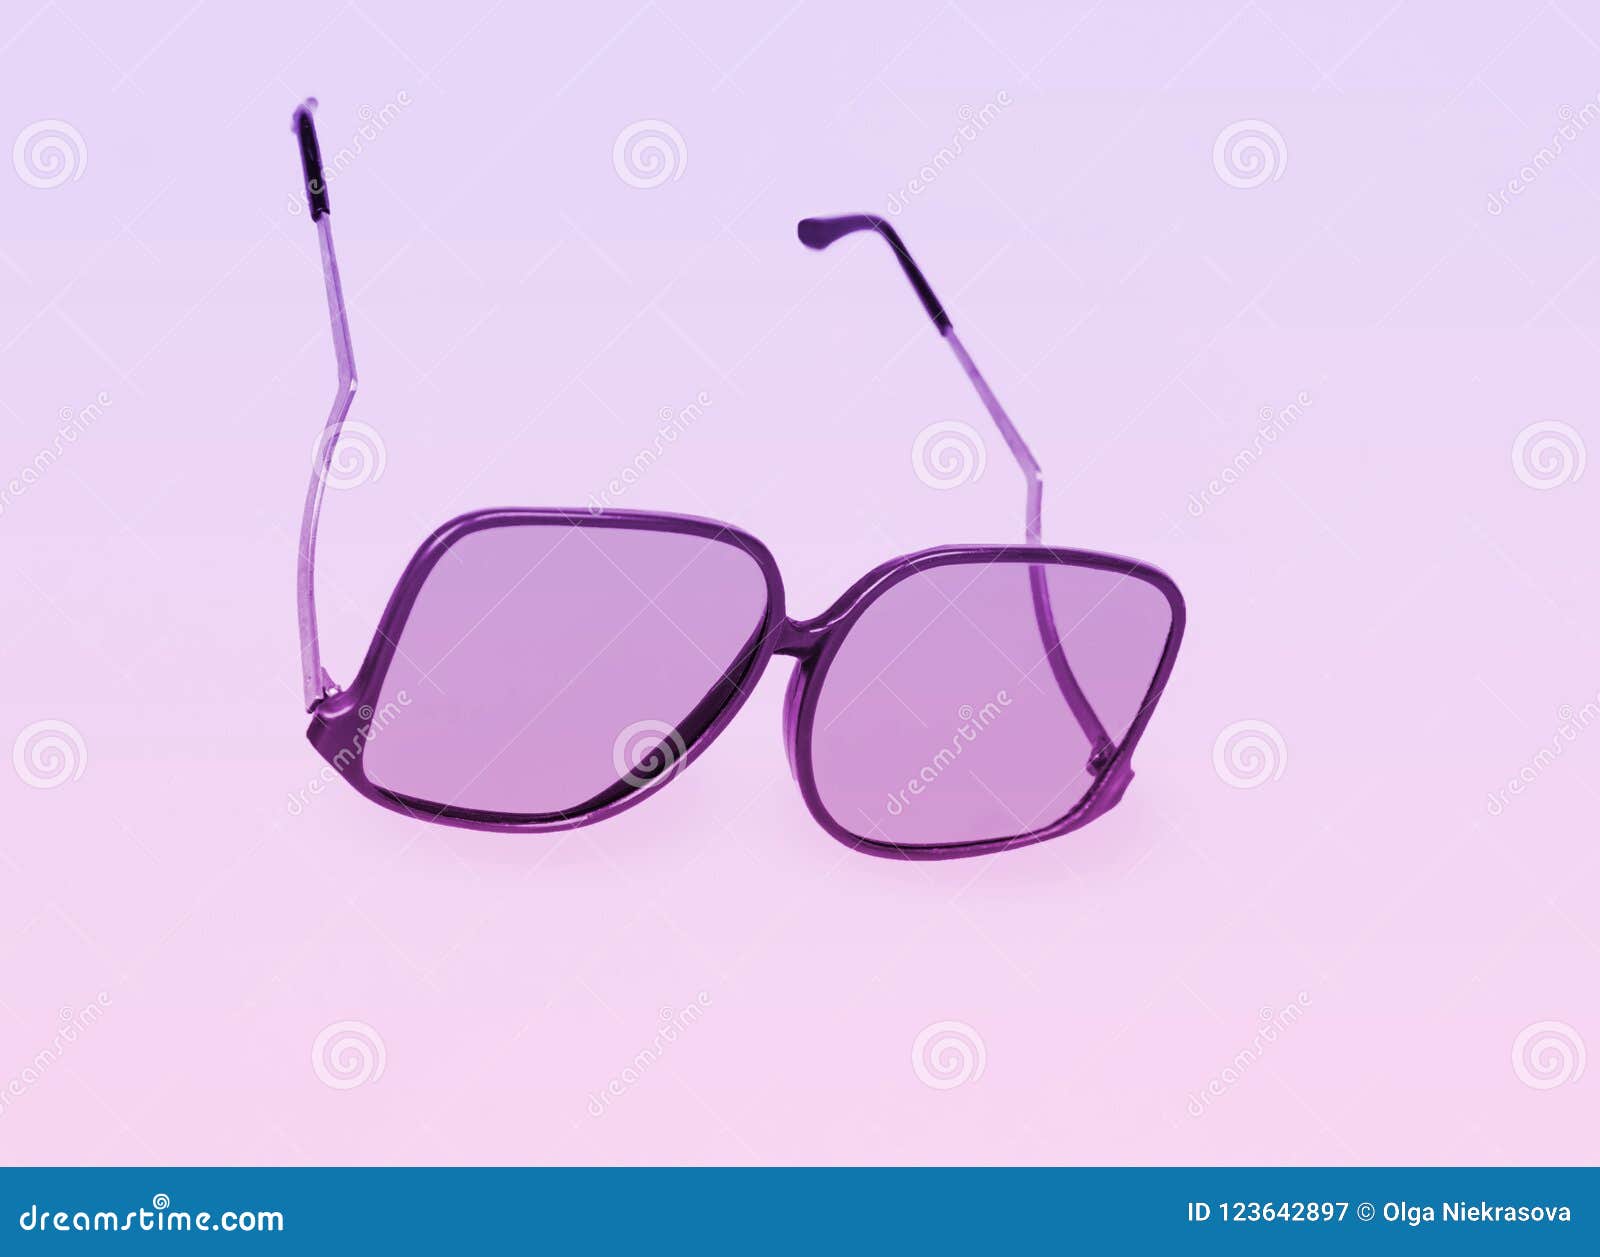 Retro Sunglasses On Bright Background Stock Image Image Of Eyewear